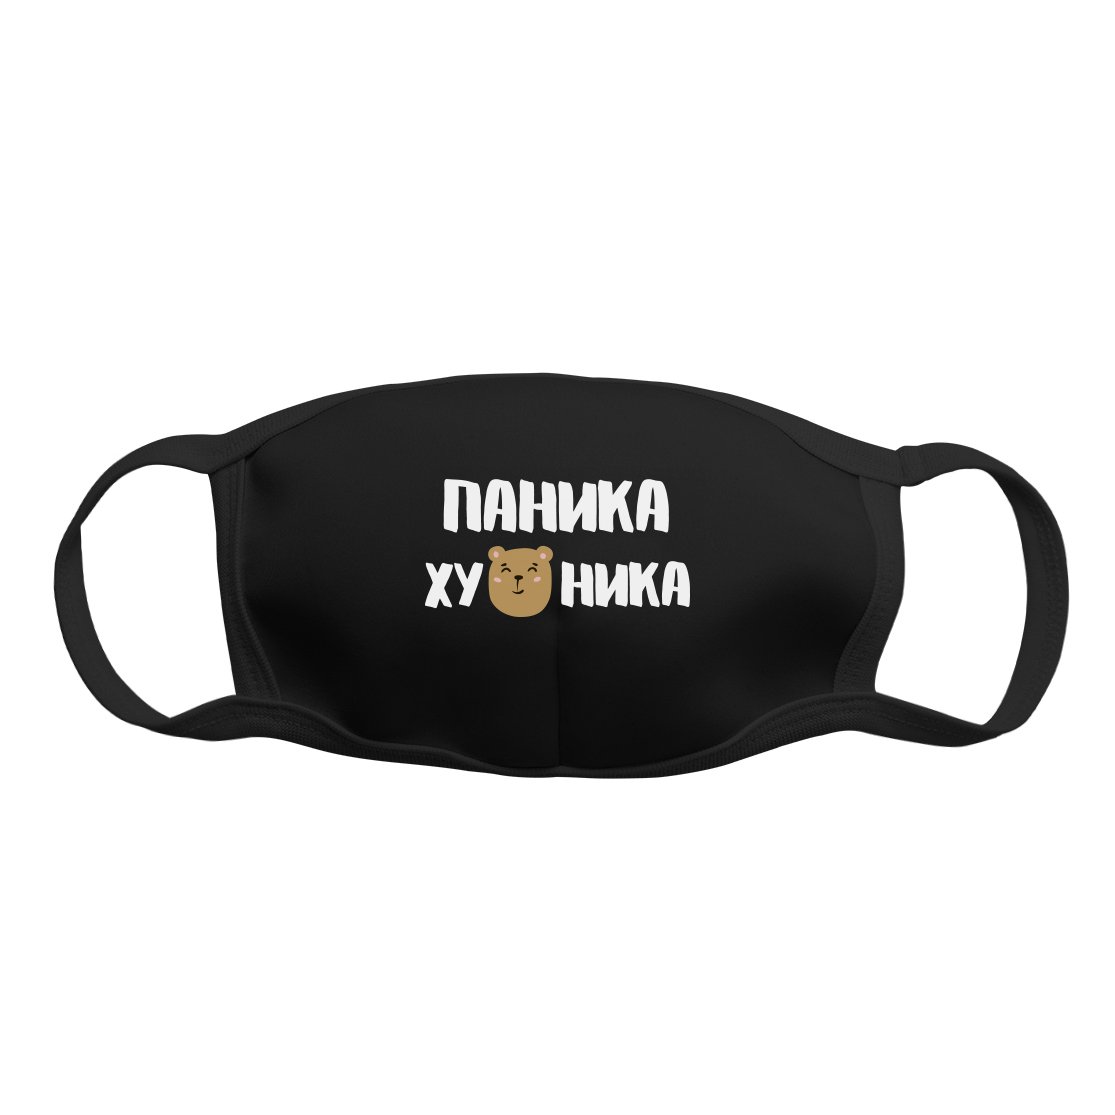 Многоразовая защитная маска Kawaii Factory KW079-000166 "Паника" черная 1 шт.